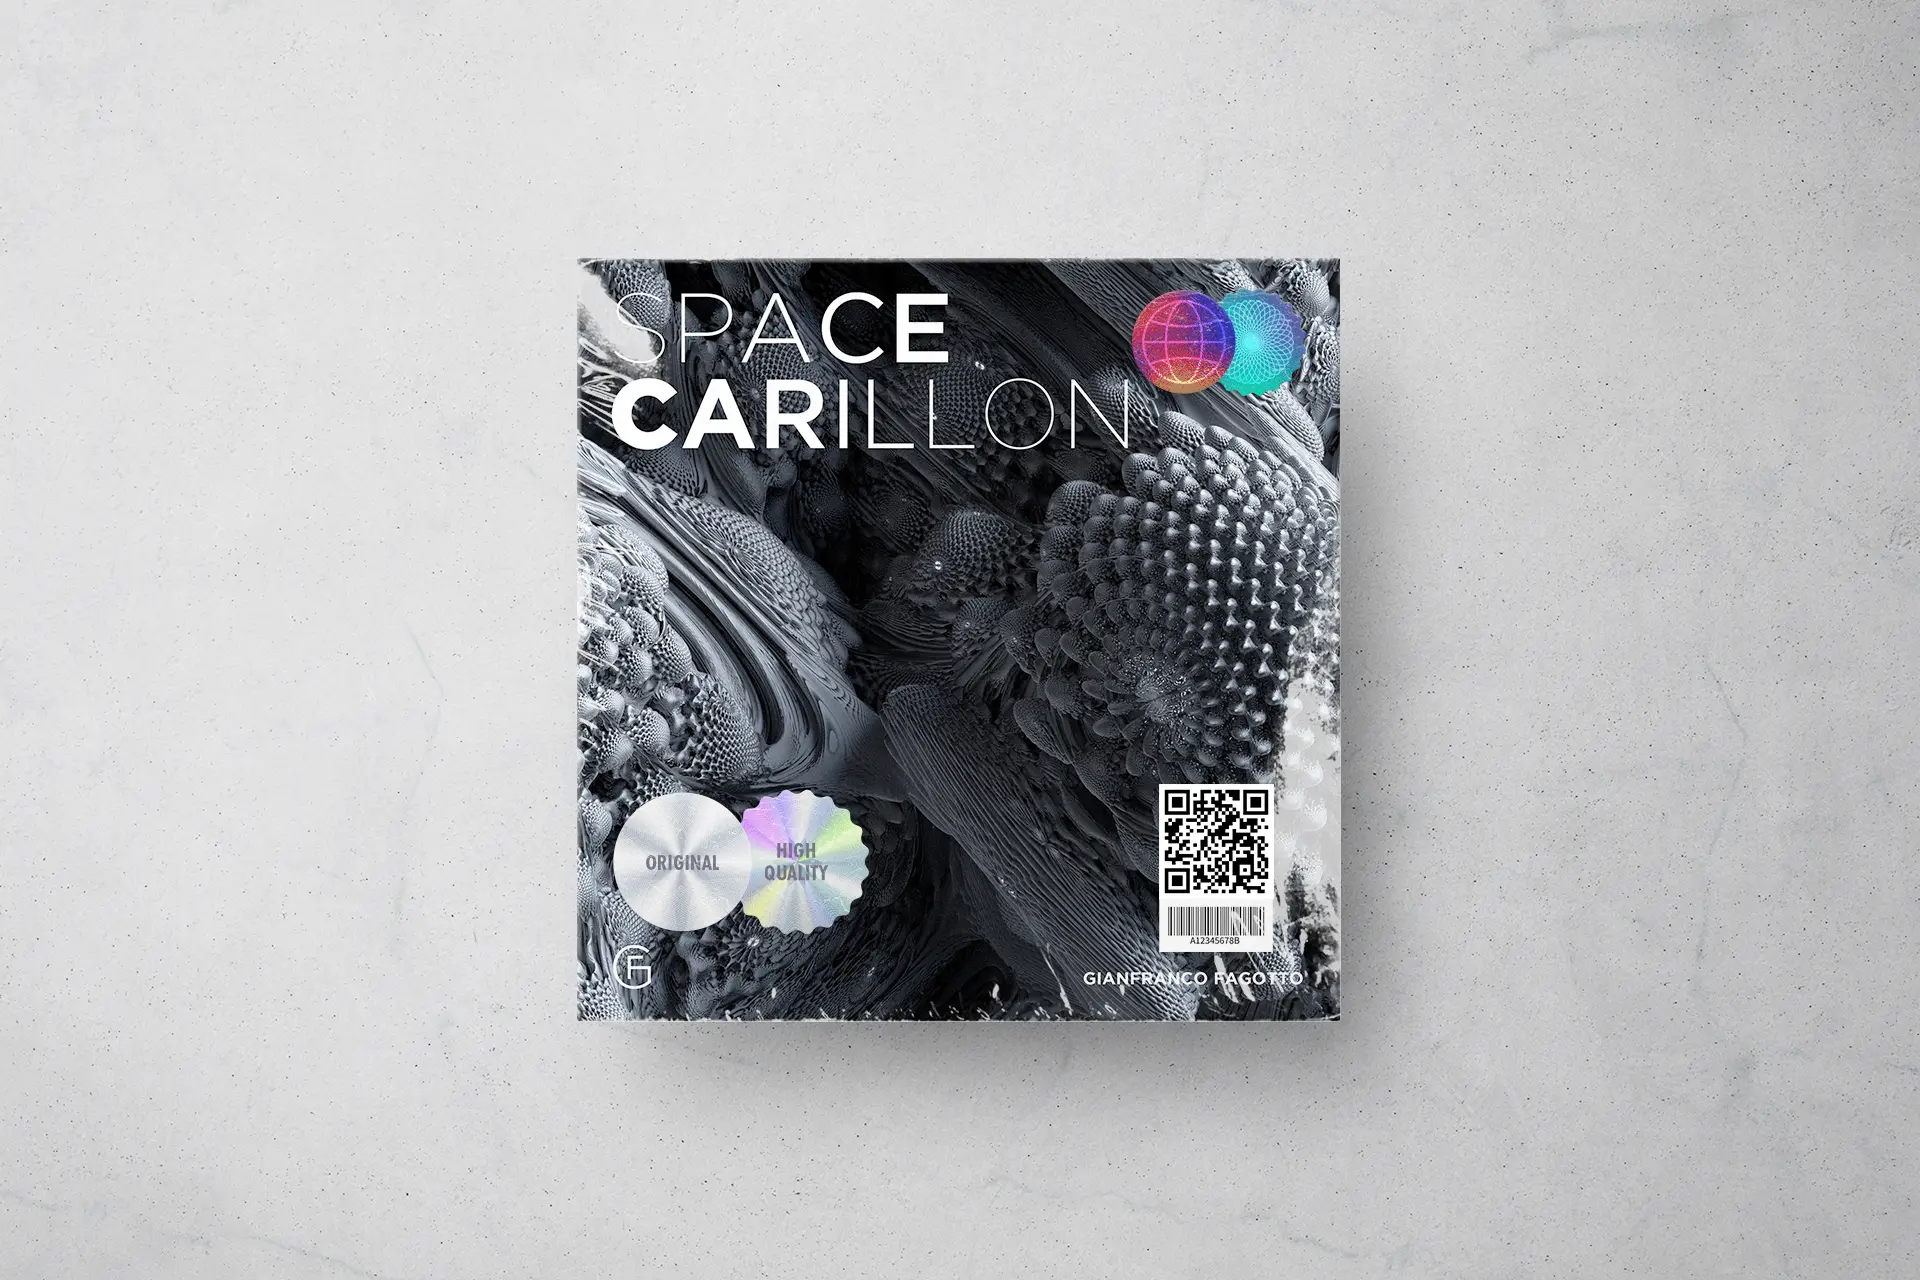 Space carillon Cover Image